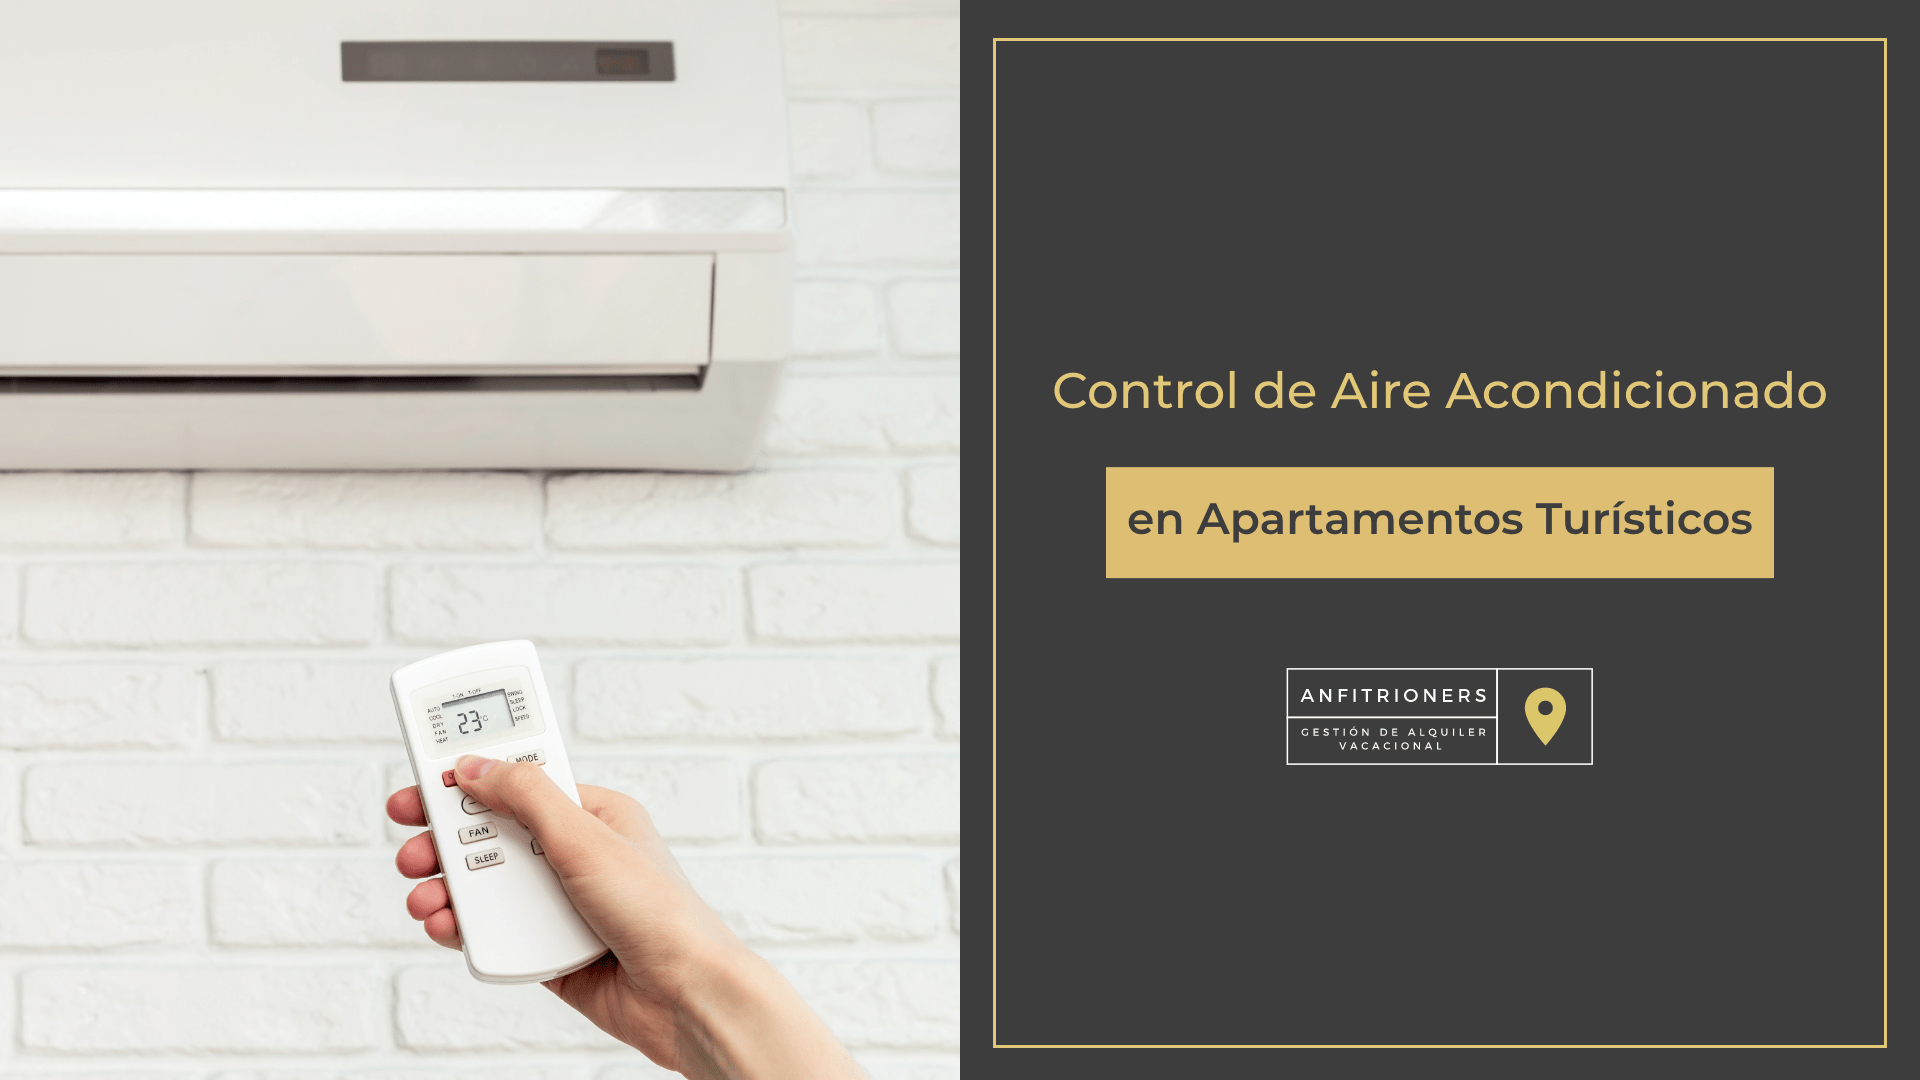 Control de Aire Acondicionado en Apartamentos Turísticos